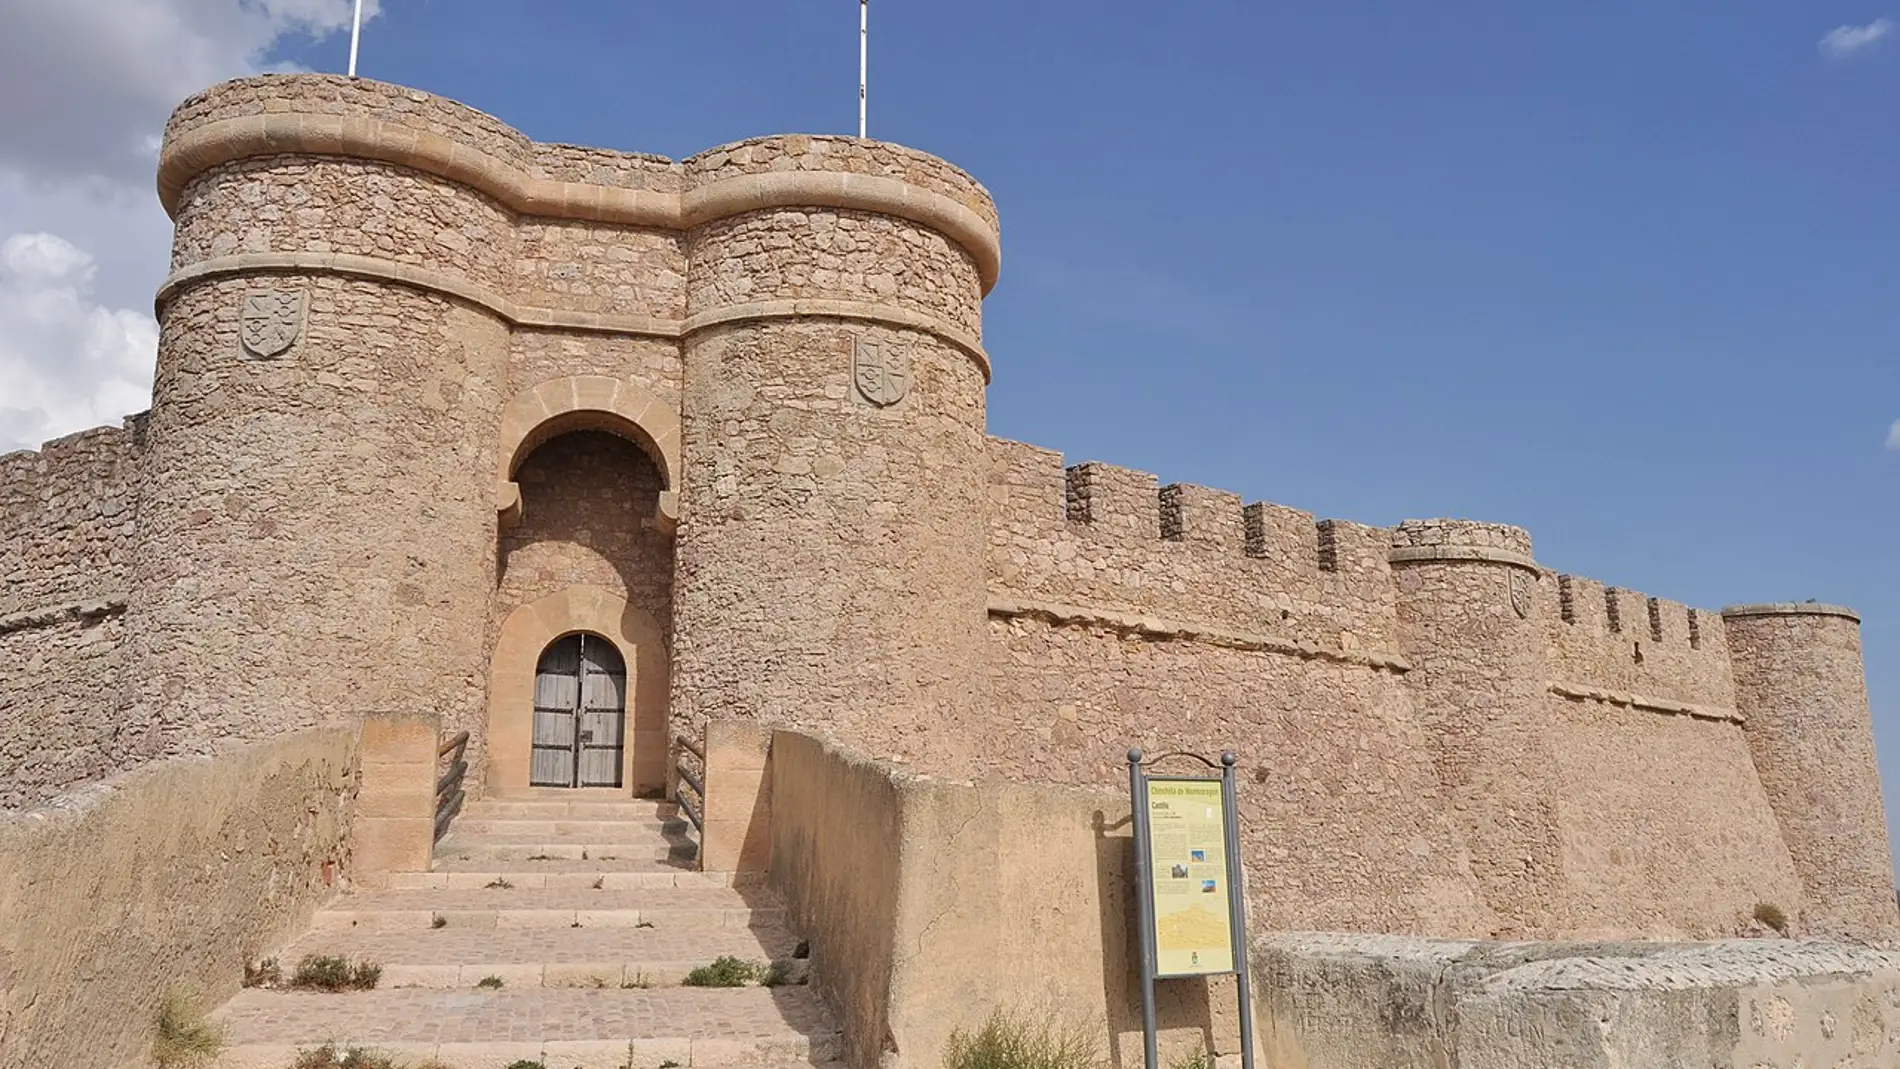 Castillo de Chinchilla de Montearagón. Albacete